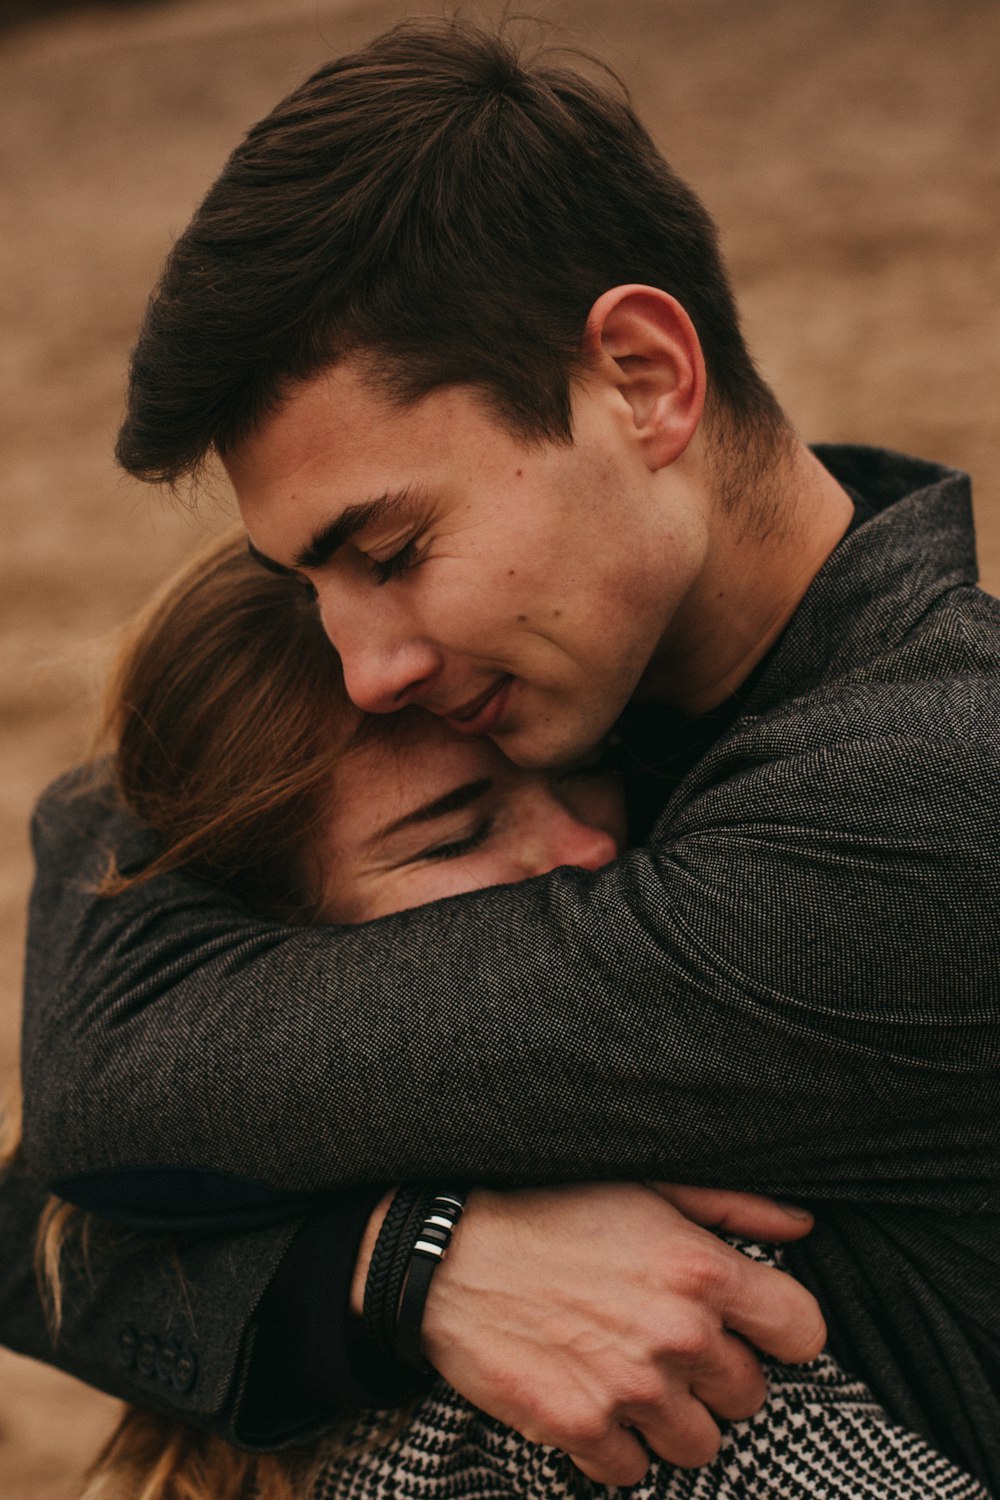 1000+ Emotional Hug Pictures | Download Free Images on Unsplash